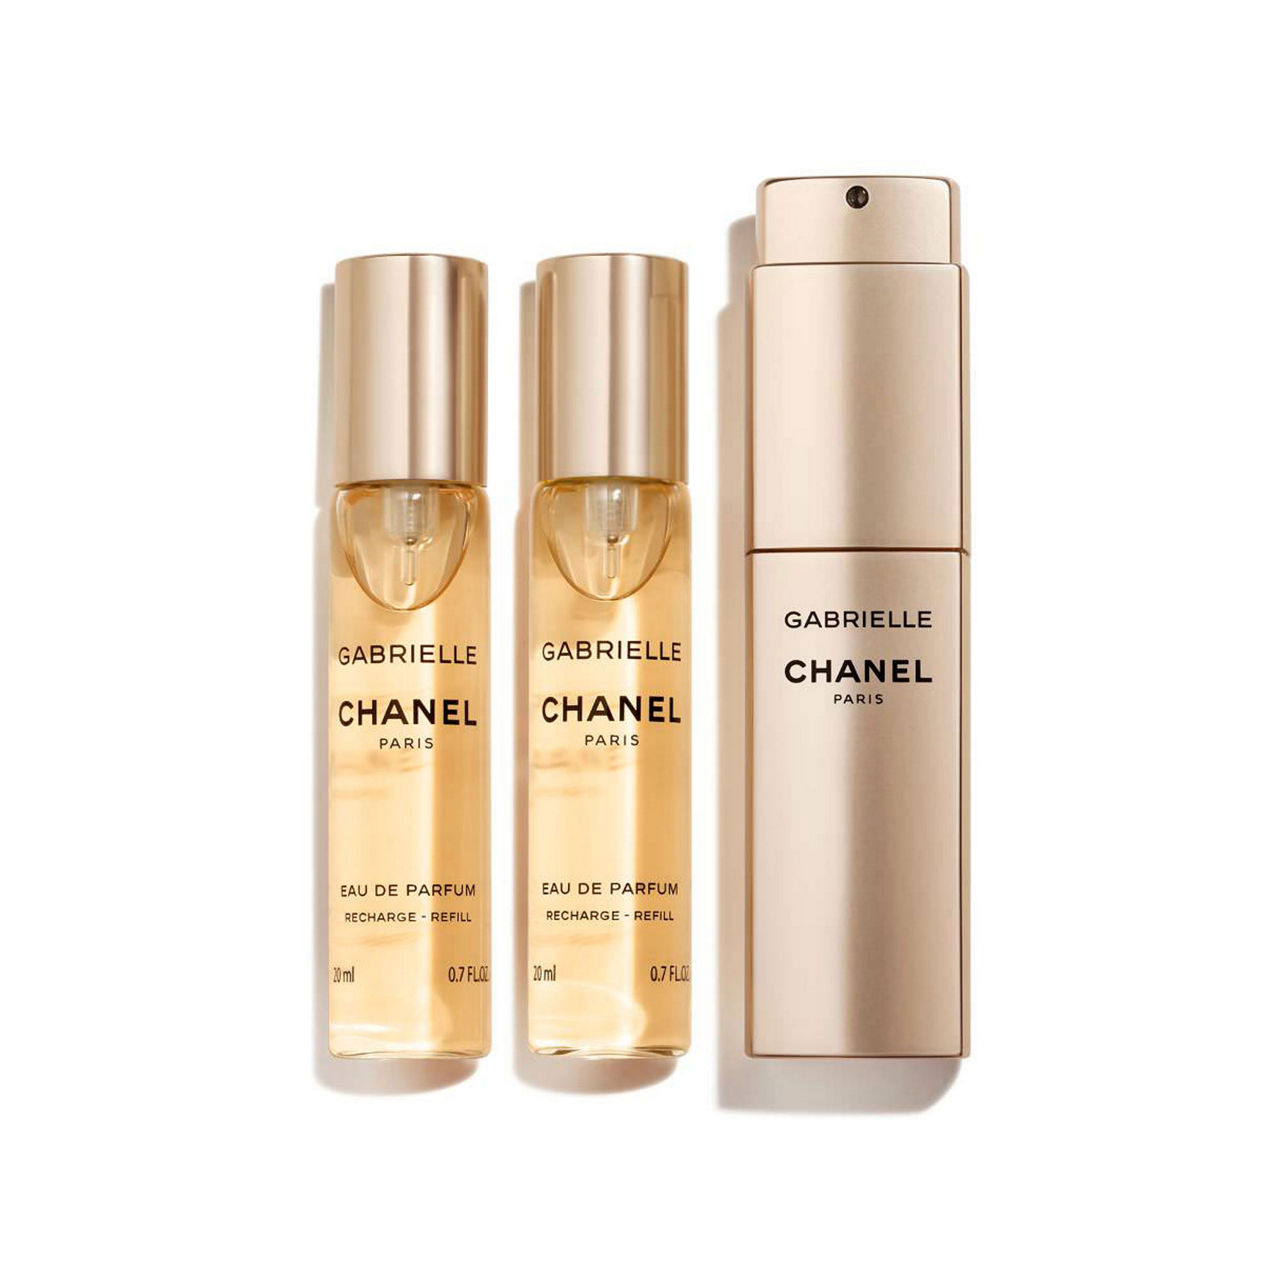 Chanel Gabrielle Chanel